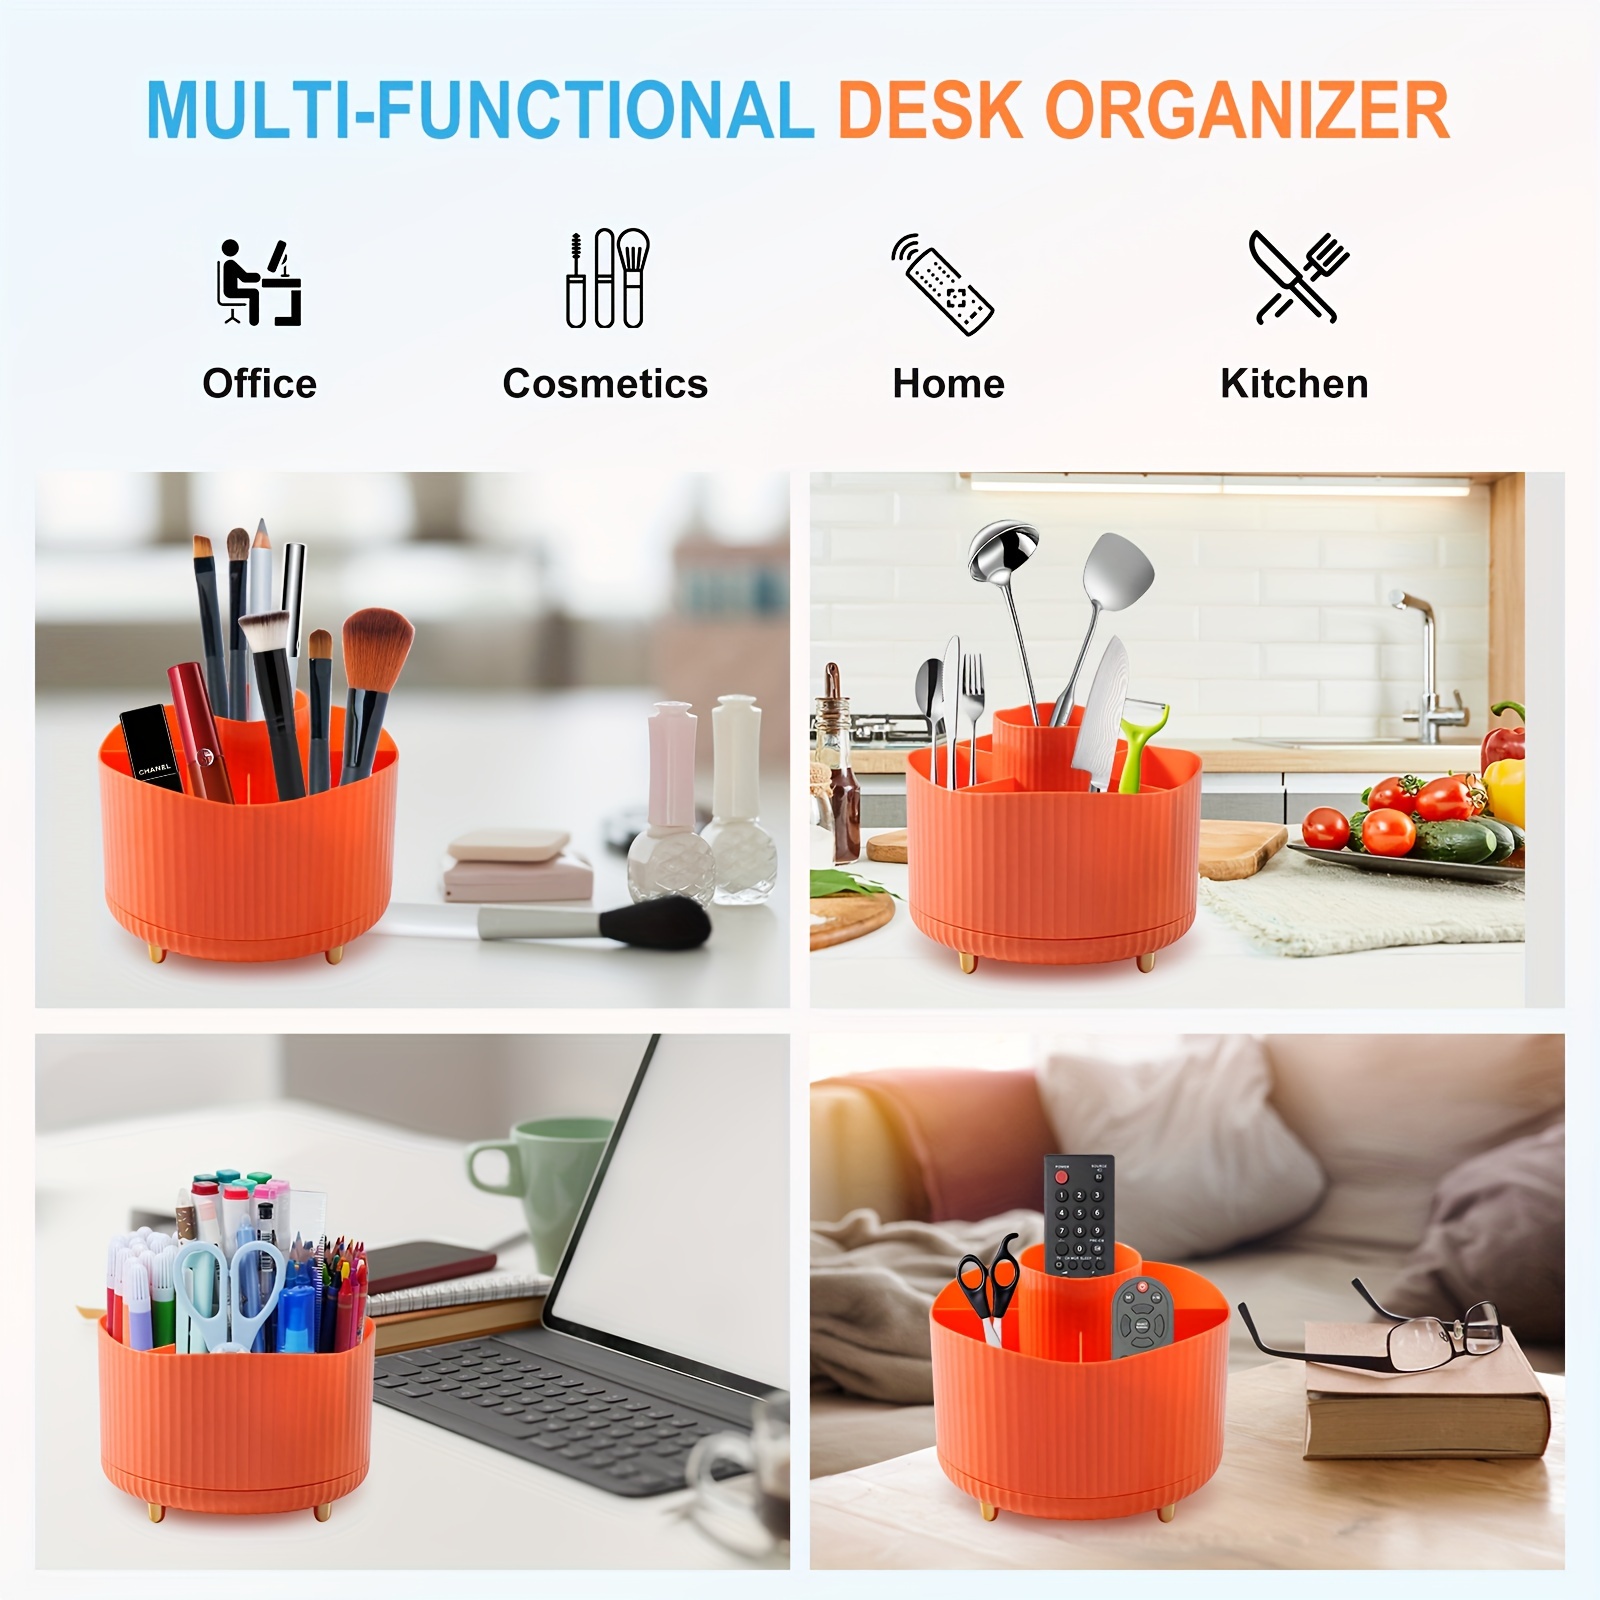 Marbrasse Desk Organizer, 360-Degree Rotating Pen Holder for Desk